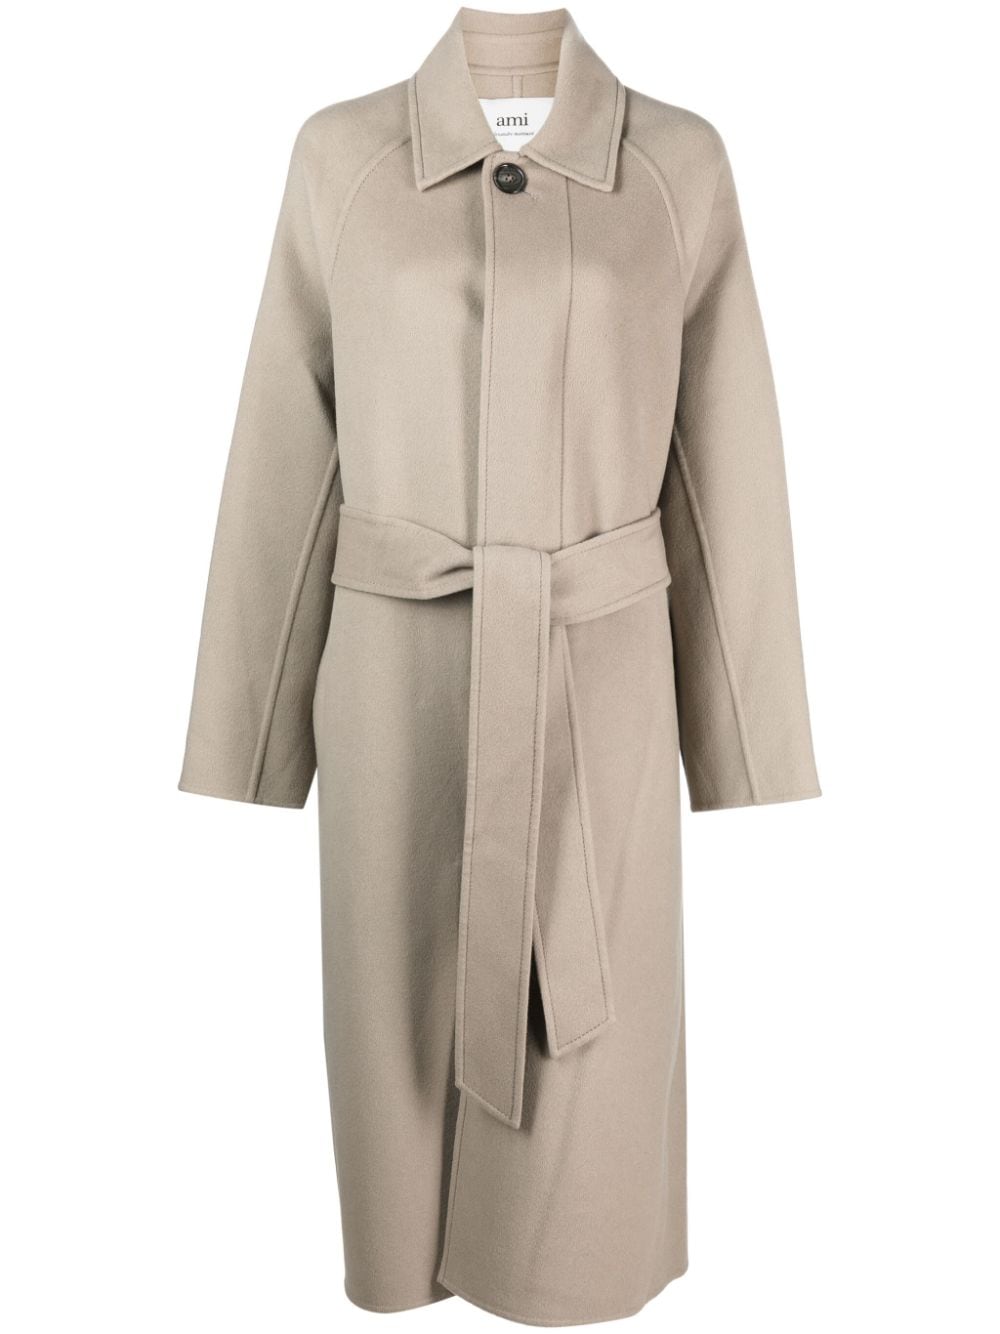 Áo Jacket Nữ Beige Wool-Cashmere với Cổ Tay Lớn Tiện Dụng và Thắt Lưng Removable